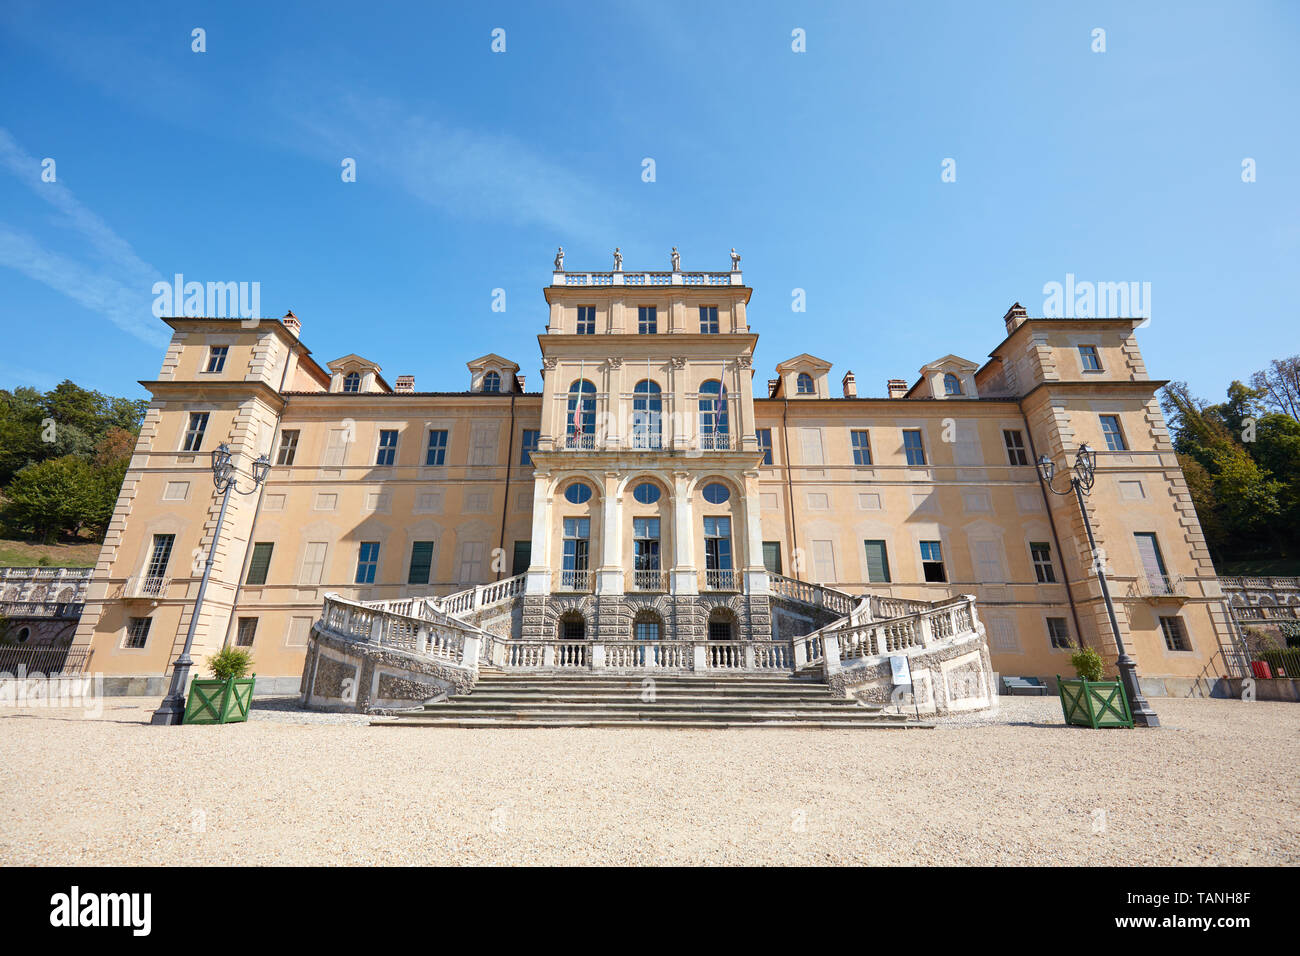 Torino, Italia - 20 agosto 2017: Villa della Regina, Regina Palace in una soleggiata giornata estiva a Torino, Italia Foto Stock